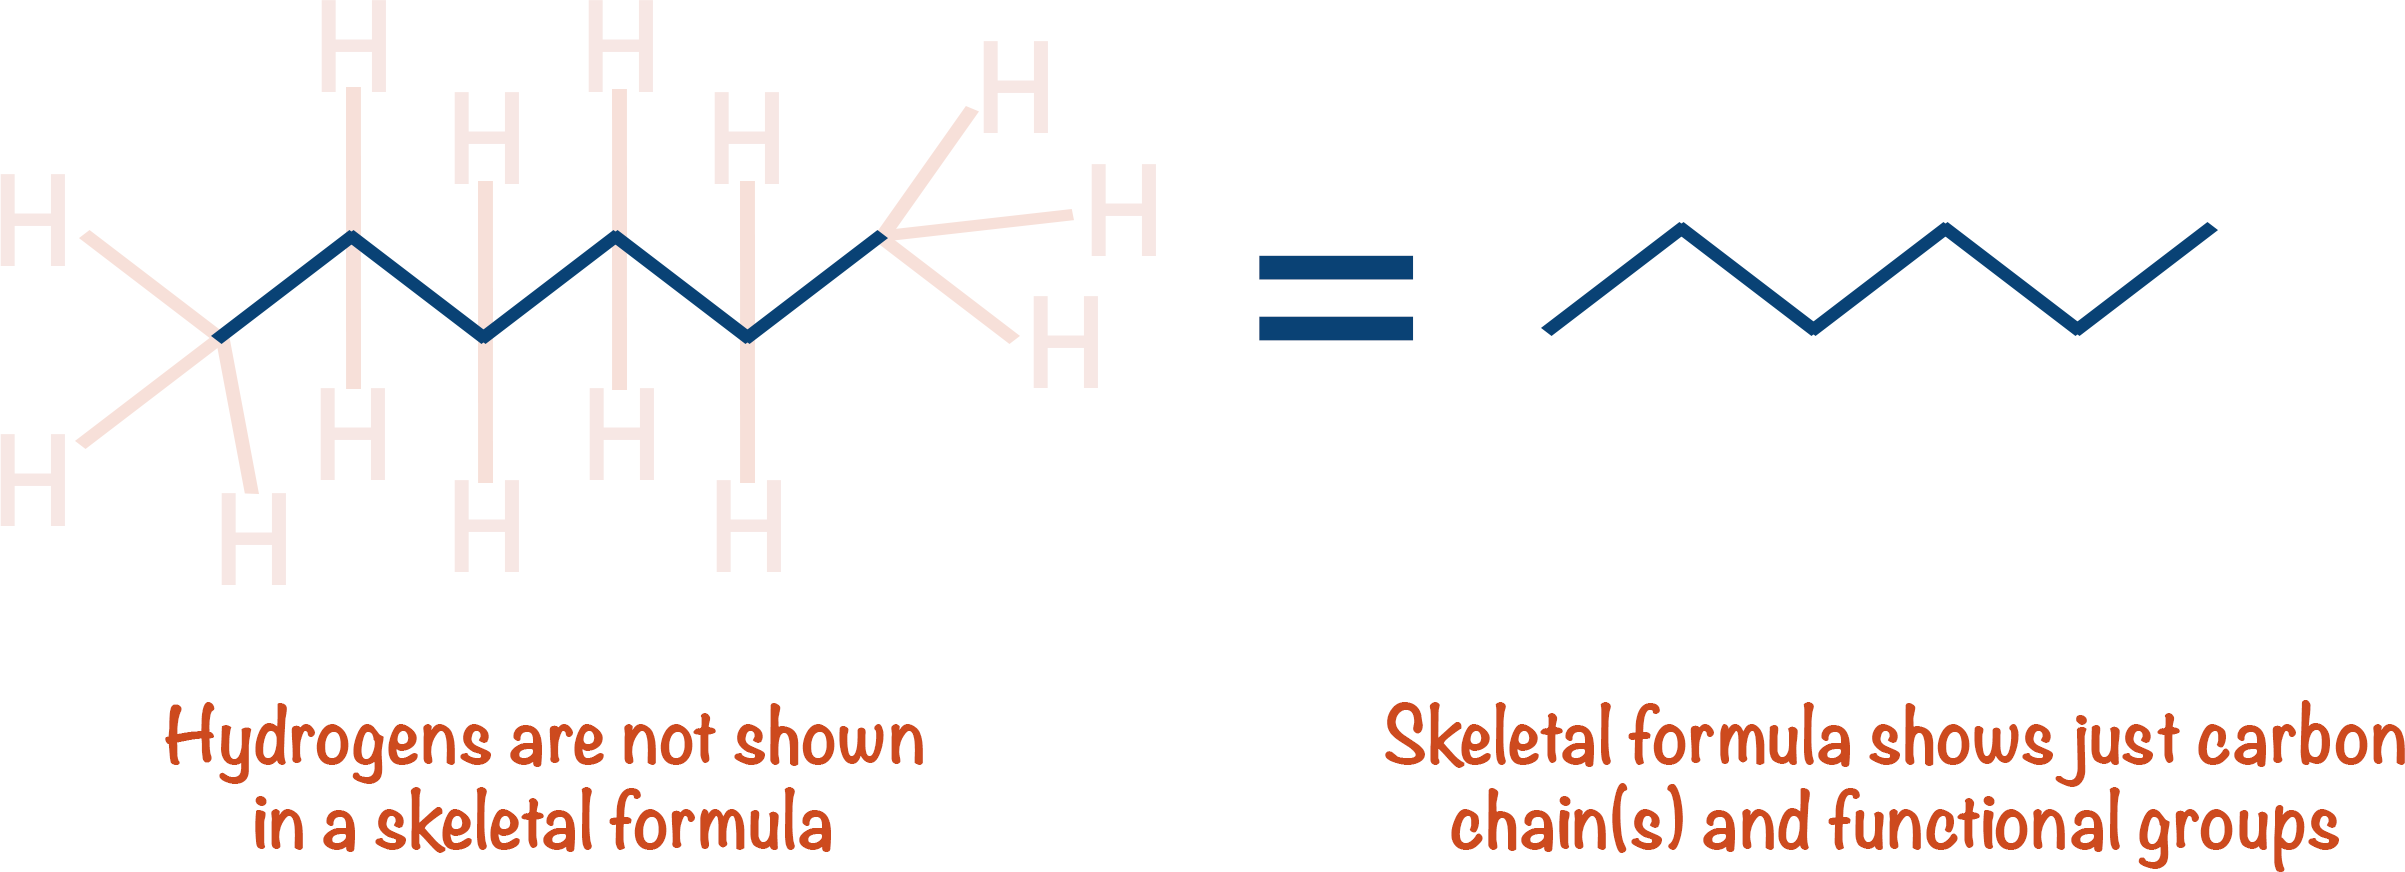 skeletal formula hydrocarbons a-level chemistry